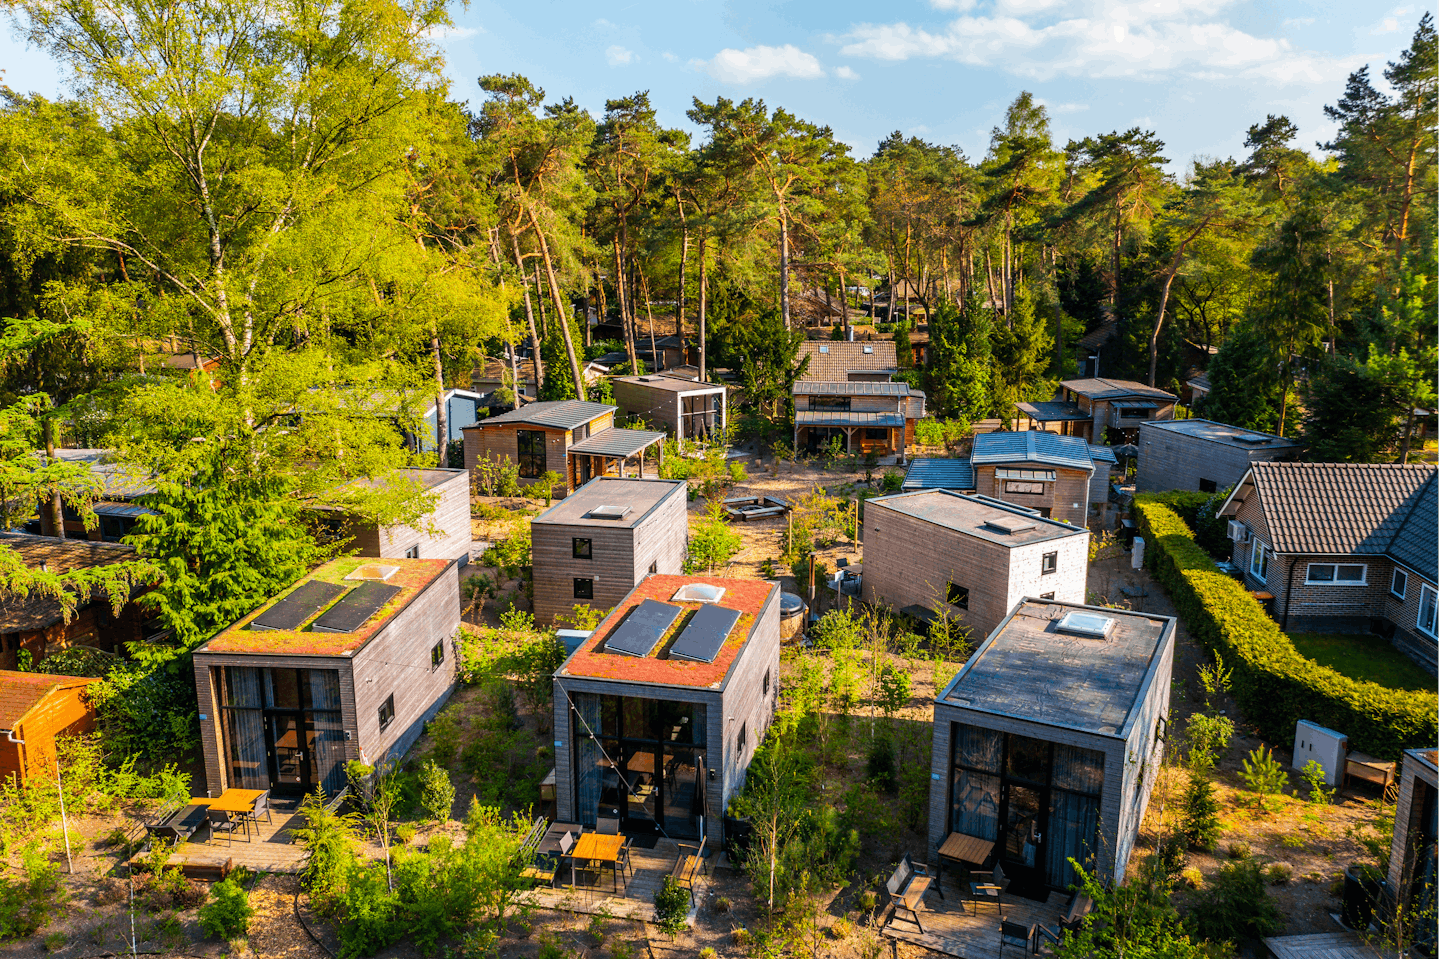 EuroParcs Beekbergen - Blick auf die Mobilheime auf dem Campingplatz